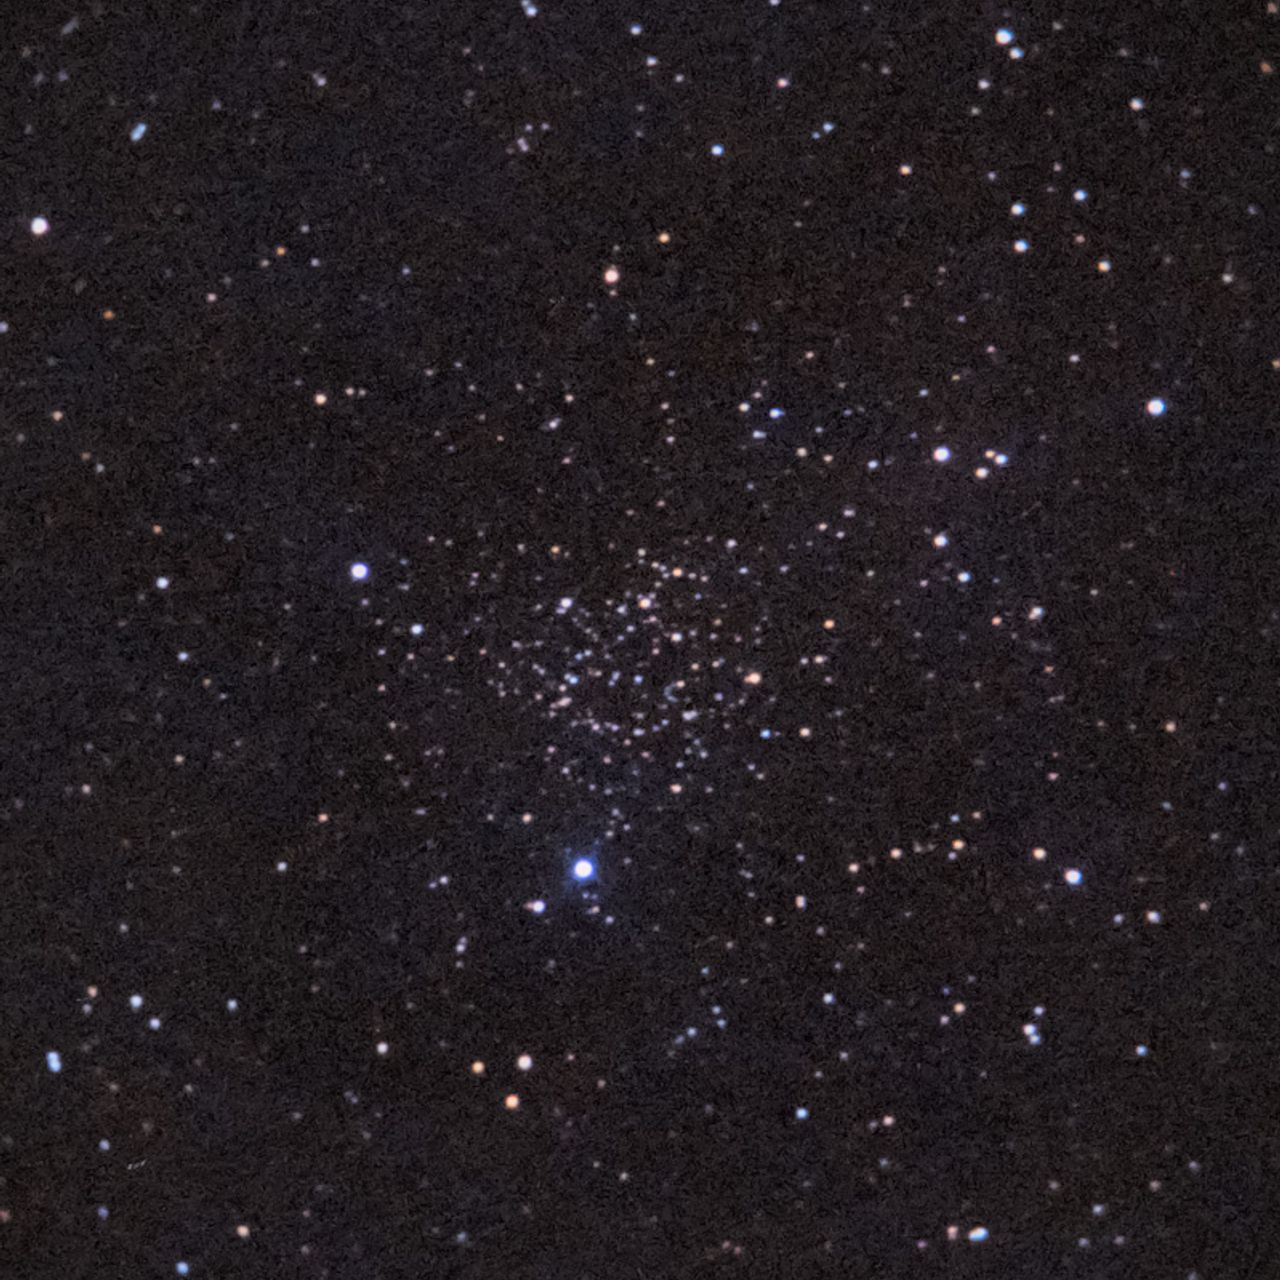 NGC1245